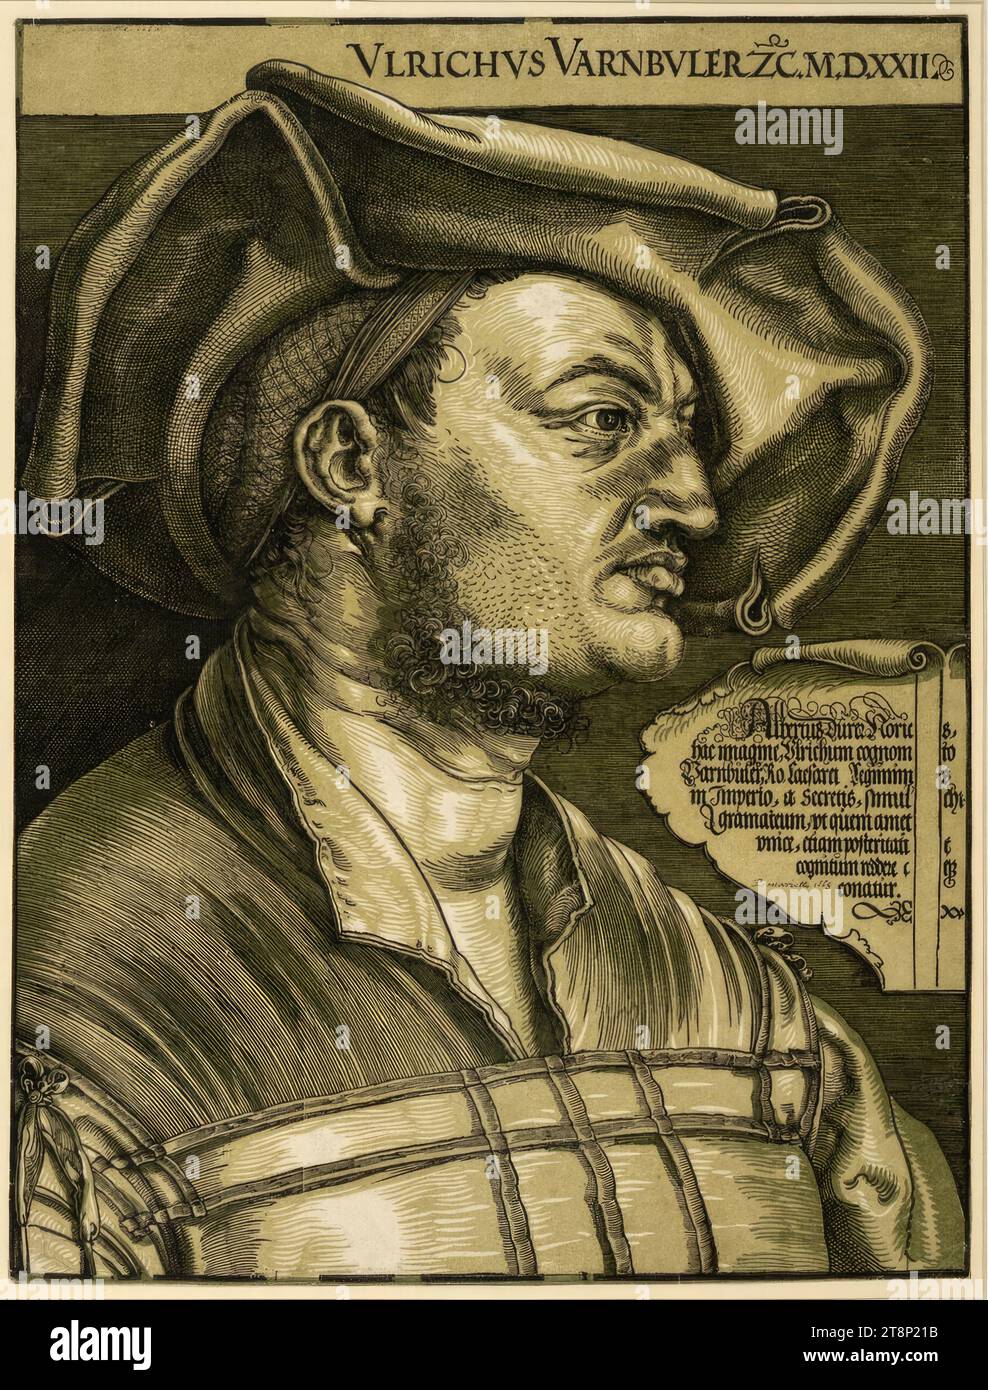 Ritratto di Ulrich Varnbüler, Albrecht Dürer (Norimberga 1471 - 1528 Norimberga), 1522 (stampa Blaeu, Amsterdam, dopo il 1620), stampa, tagliato in legno (clair obscur woodcut), con stampa tonica di oliva; foglio rifinito in platemark, foglio: 43,6 x 33 cm, r.o. 'VLRICHVS VARNBVLER ZC.M.D.XXII.'; M.r.: 'Albertus Durer Noric[u]s, hac Imagine, Vlrichum cognom[en]to, Varnbuler, RO. Caesarei Regiminis, in Imperio, a Secretis, simul[ar]chi, gramateum, vt quem amet, vnice, etiam posteriati [vul]t/ cognitum reddere c[oler]eque Foto Stock